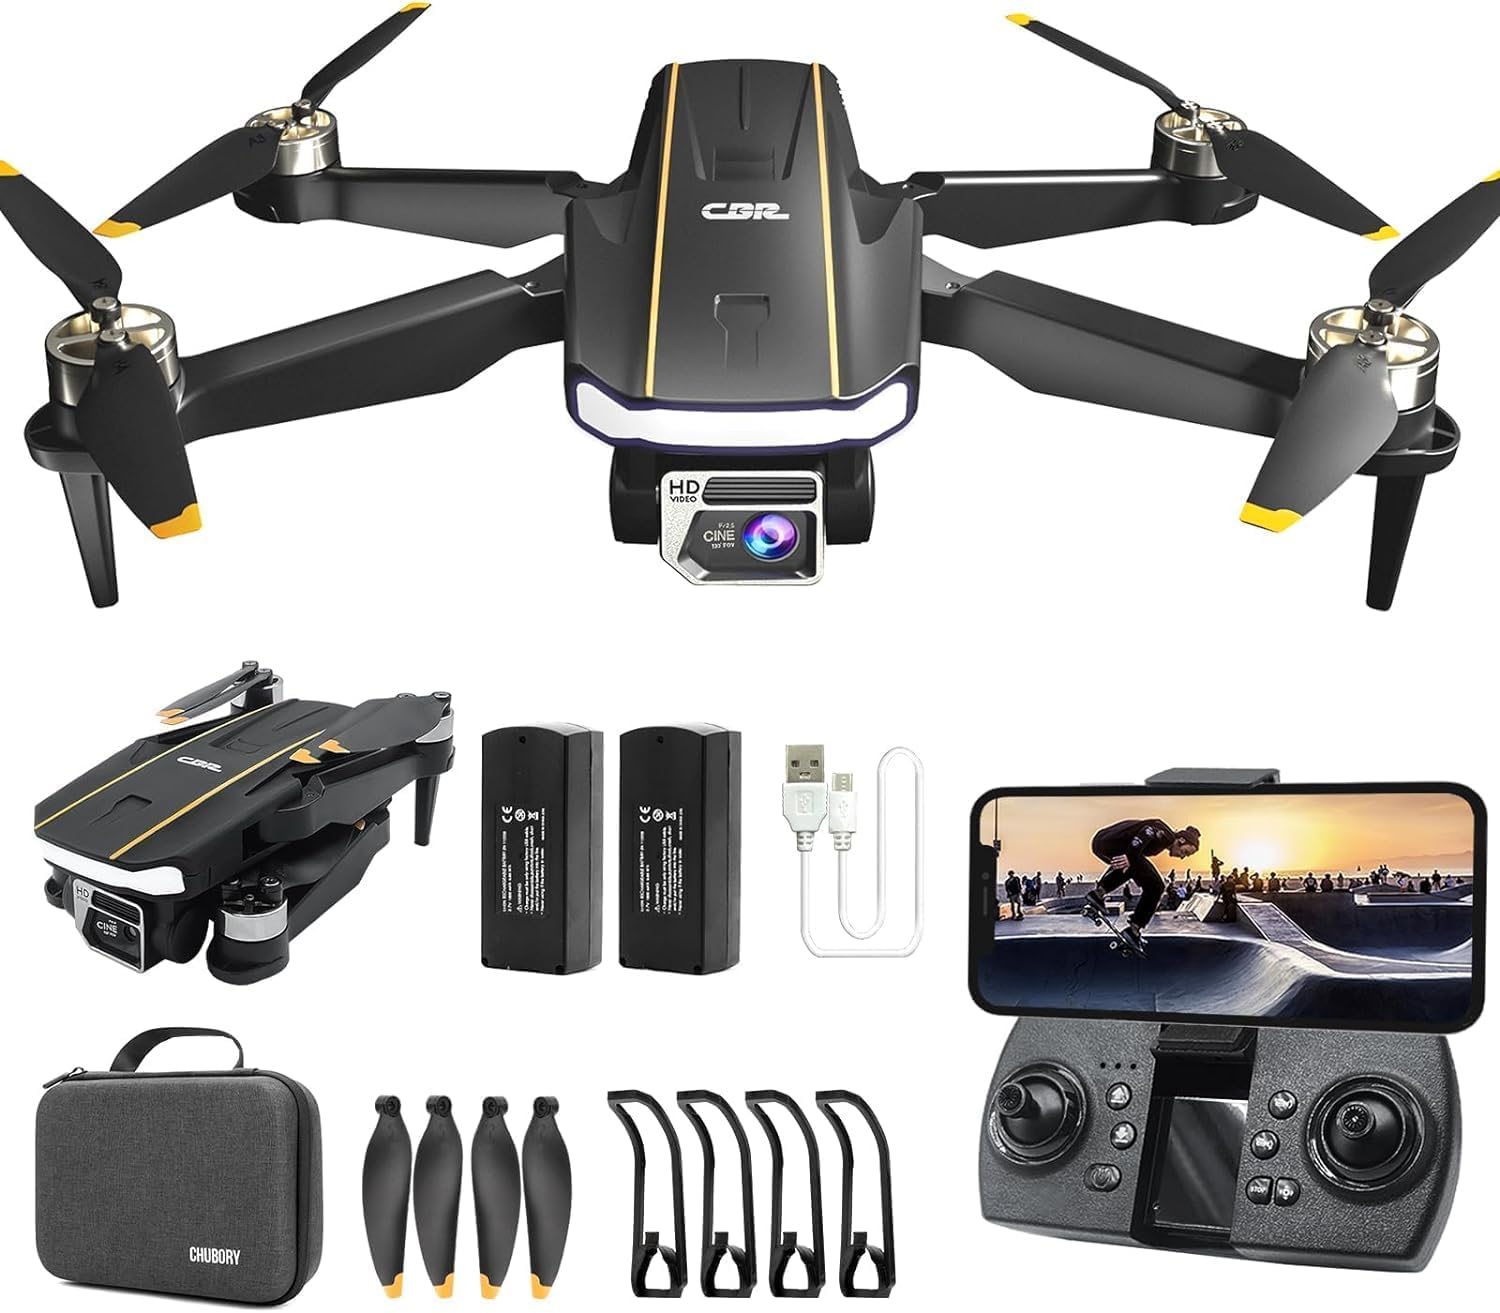 Robuster bürstenloser Motor-Drohne mit Kamera für Anfänger, CHUBORY A68 WiFi FPV Quadcopter mit HD-Kamera, automatischer Schwebe, 3D-Flips, kopfloser Modus, Trajektorienflug, 2 Batterien, Tragetasche von CHUBORY